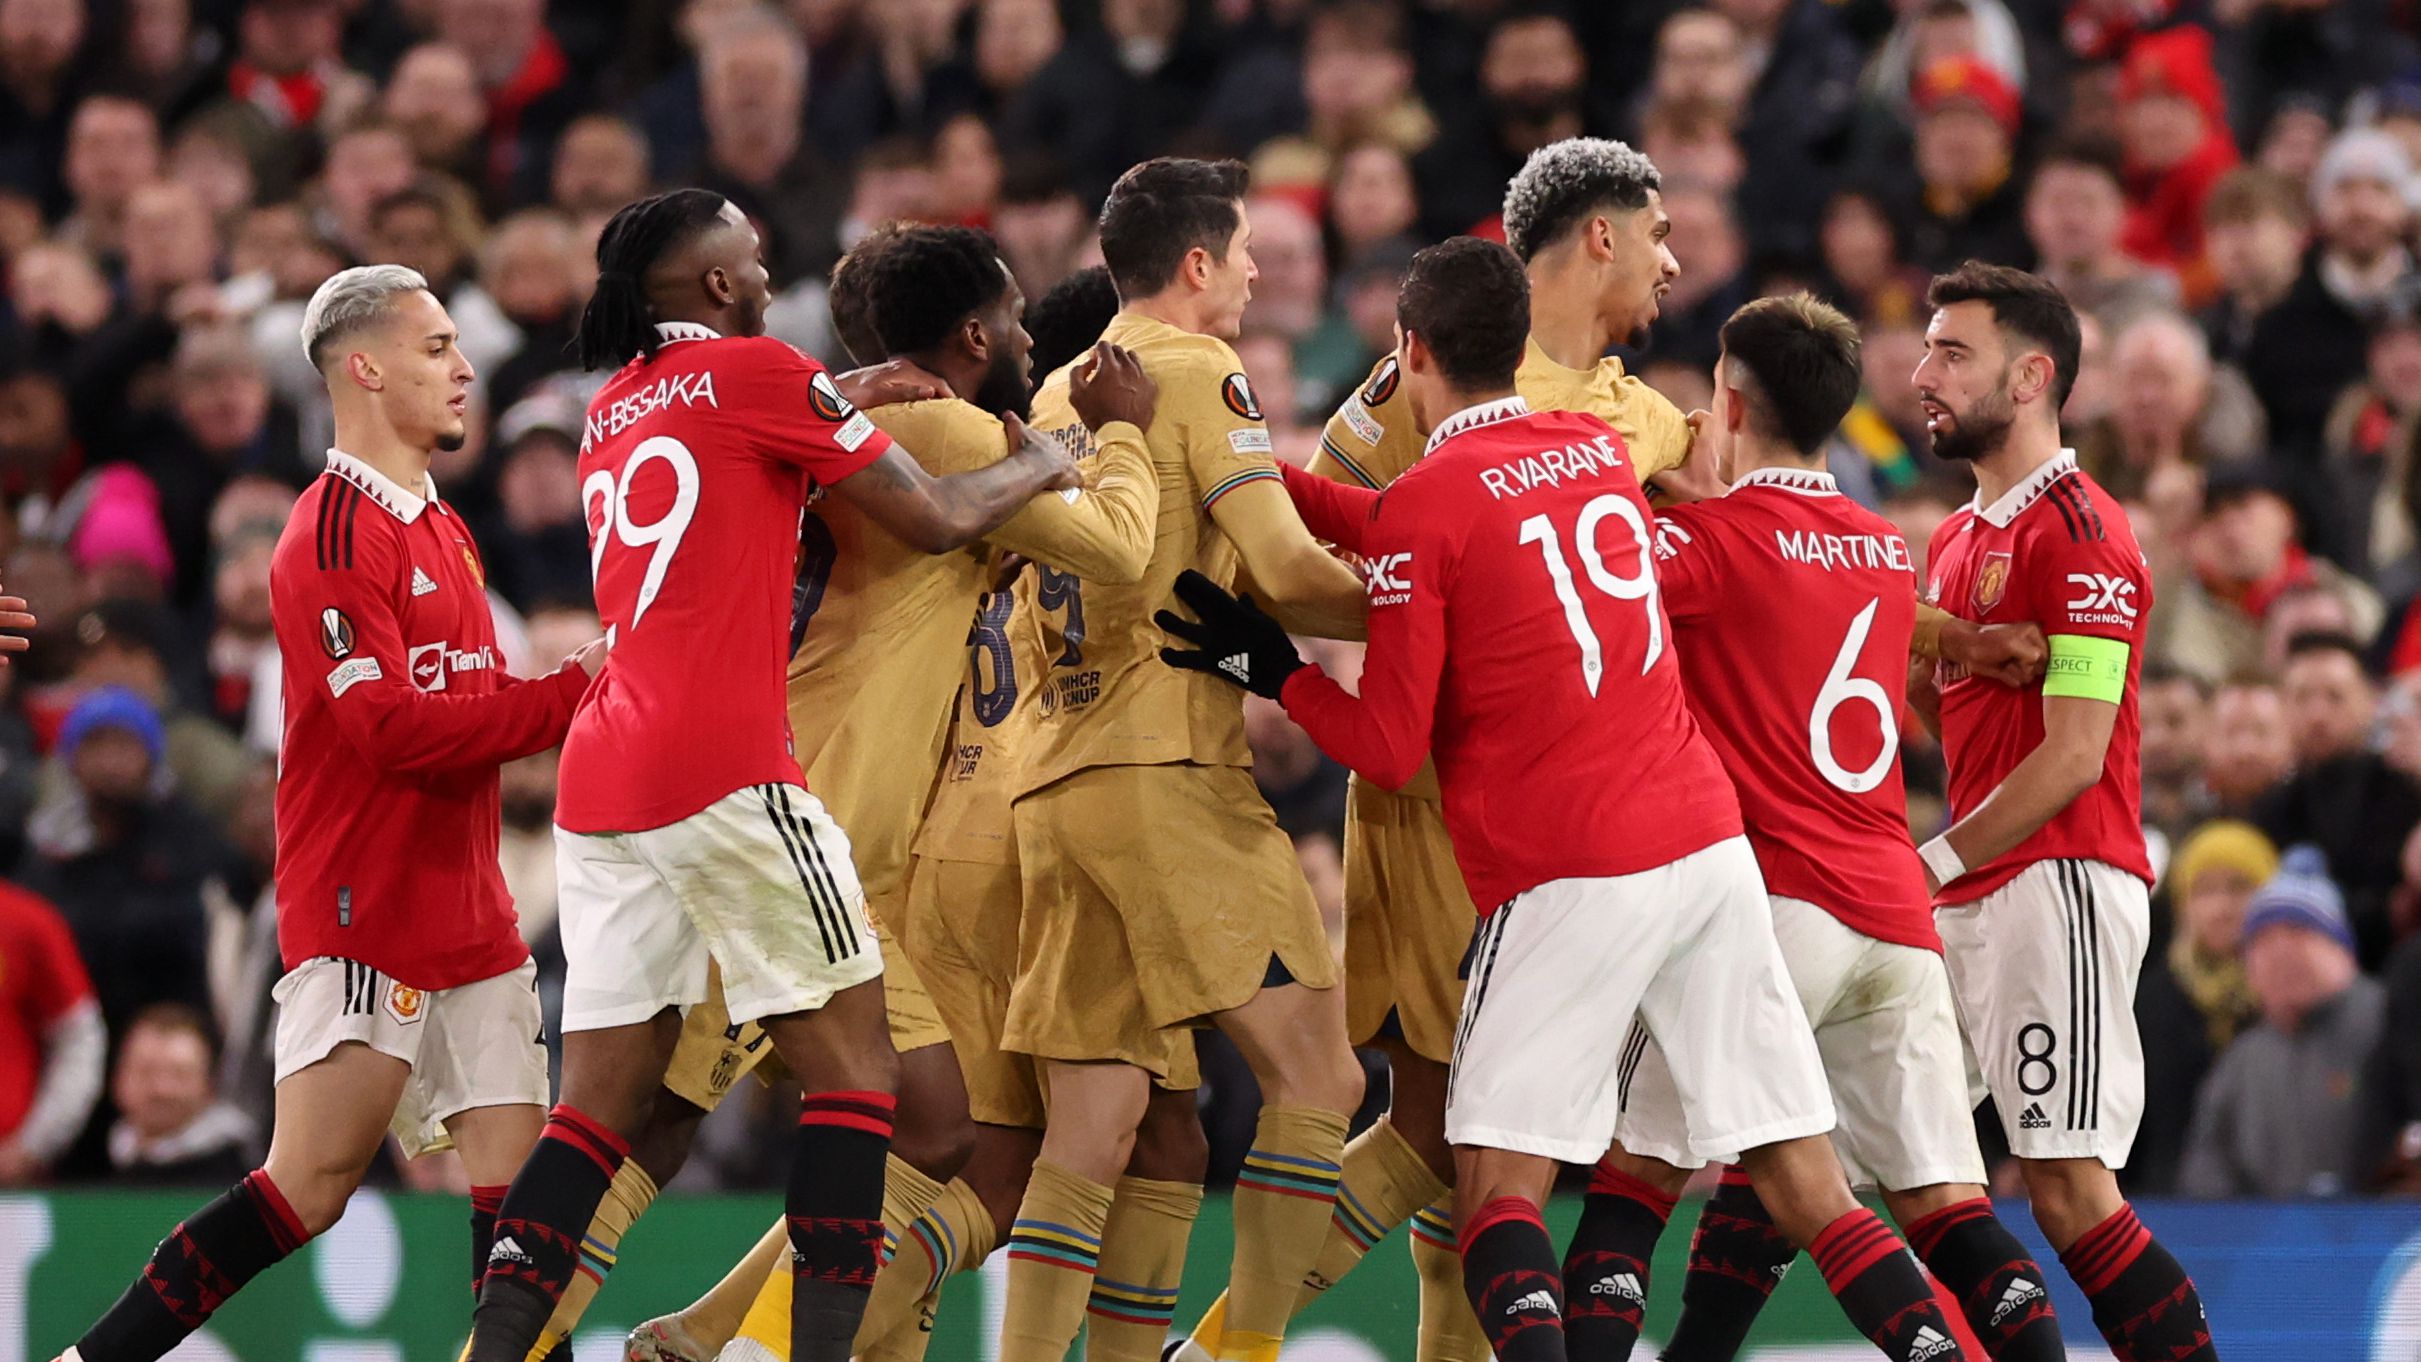 Confusão durante a partida entre Manchester United e Barcelona (Crédito: Getty Images)